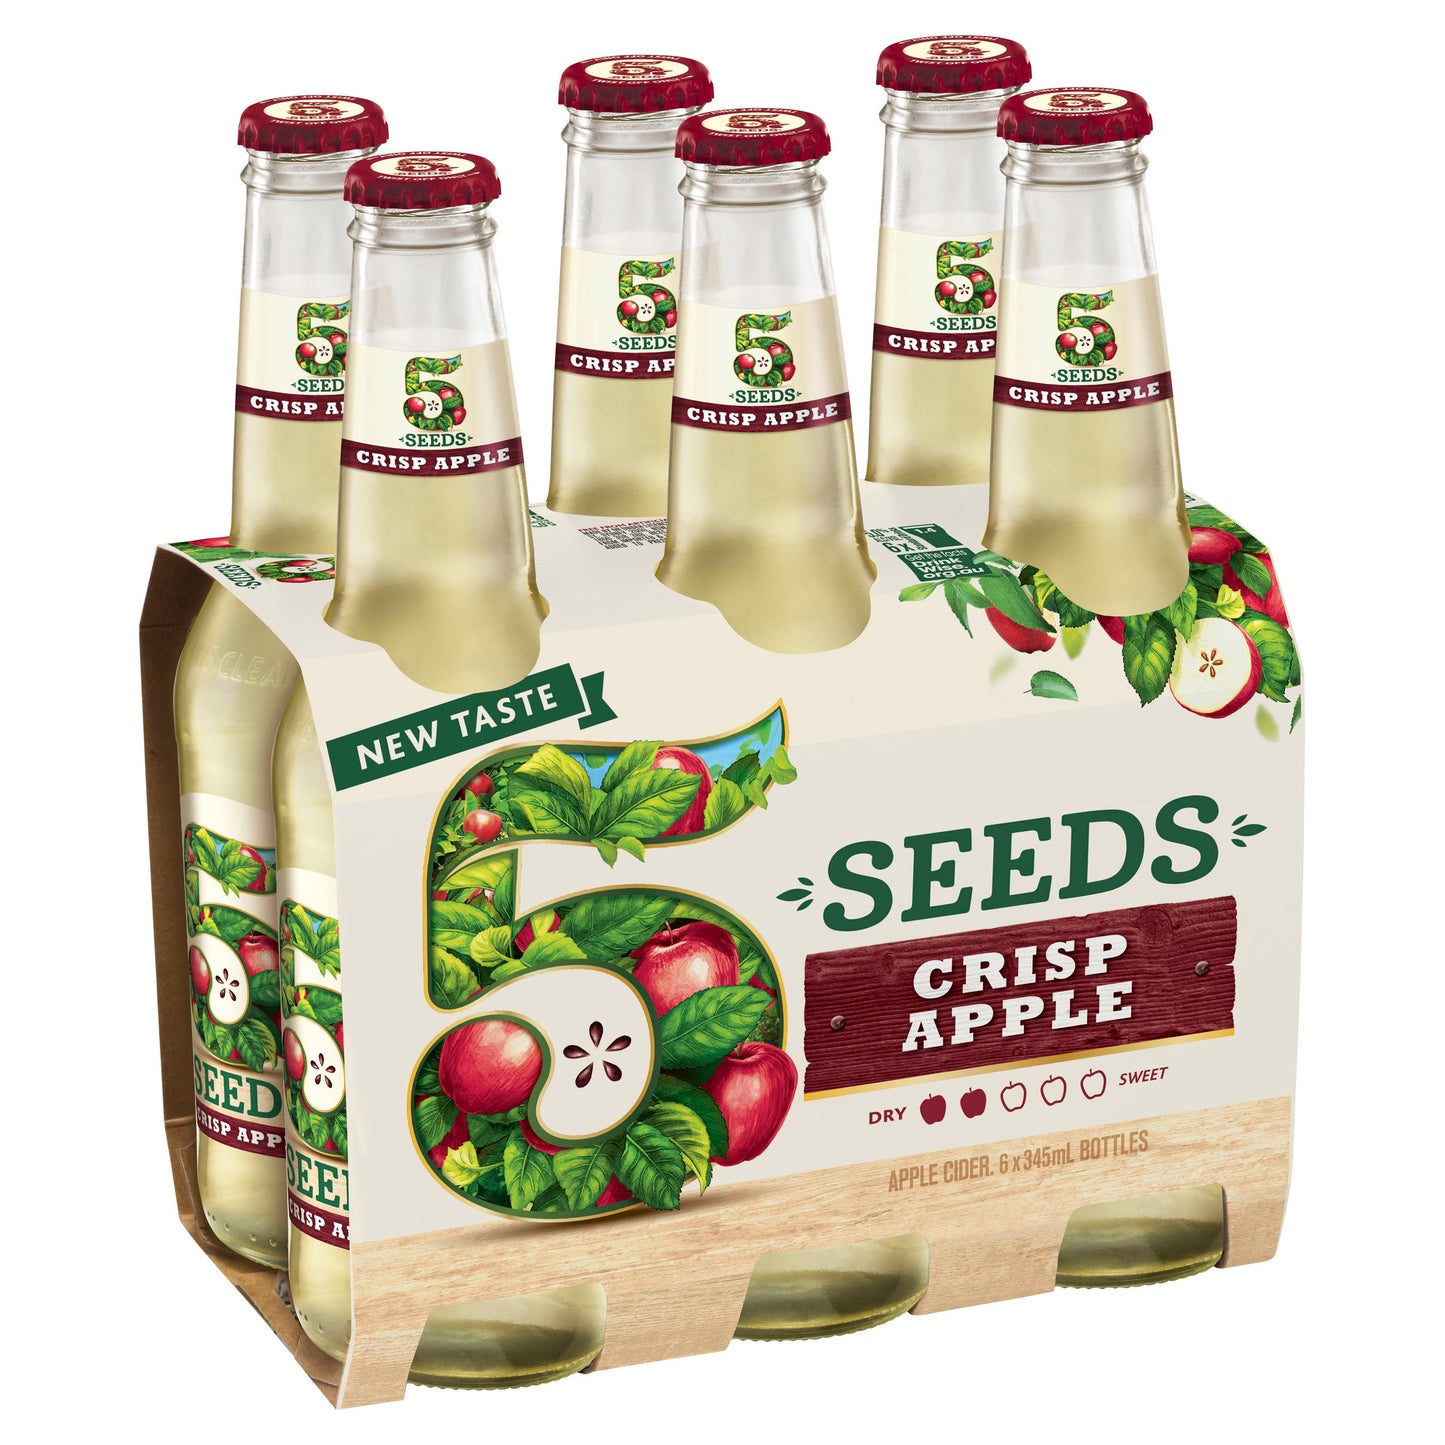 5 Seeds Crisp Apple Cider 6 x 345mL Bottle